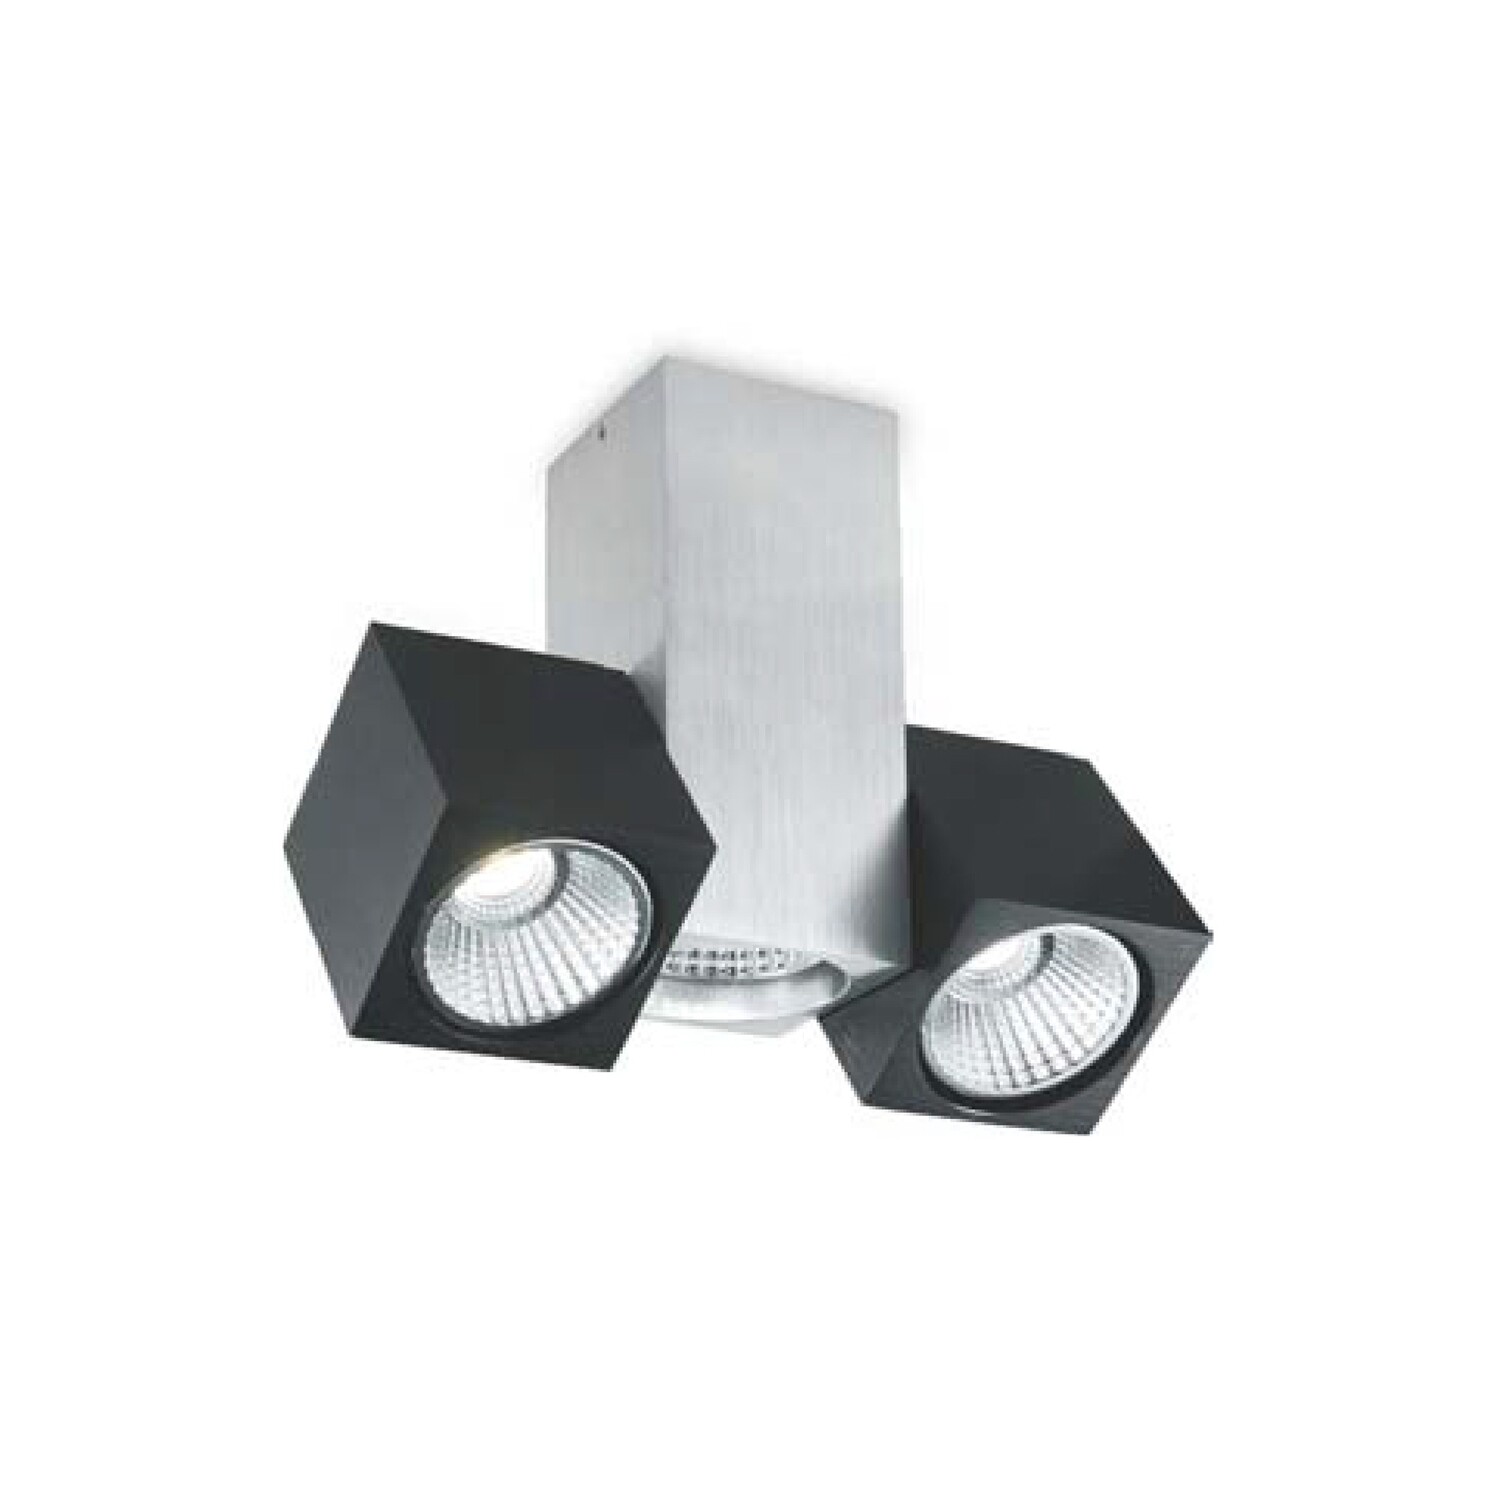 Lampara tipo spot direccionable modelo Deco doble y cubo en color negro/aluminio y luz extra cálida